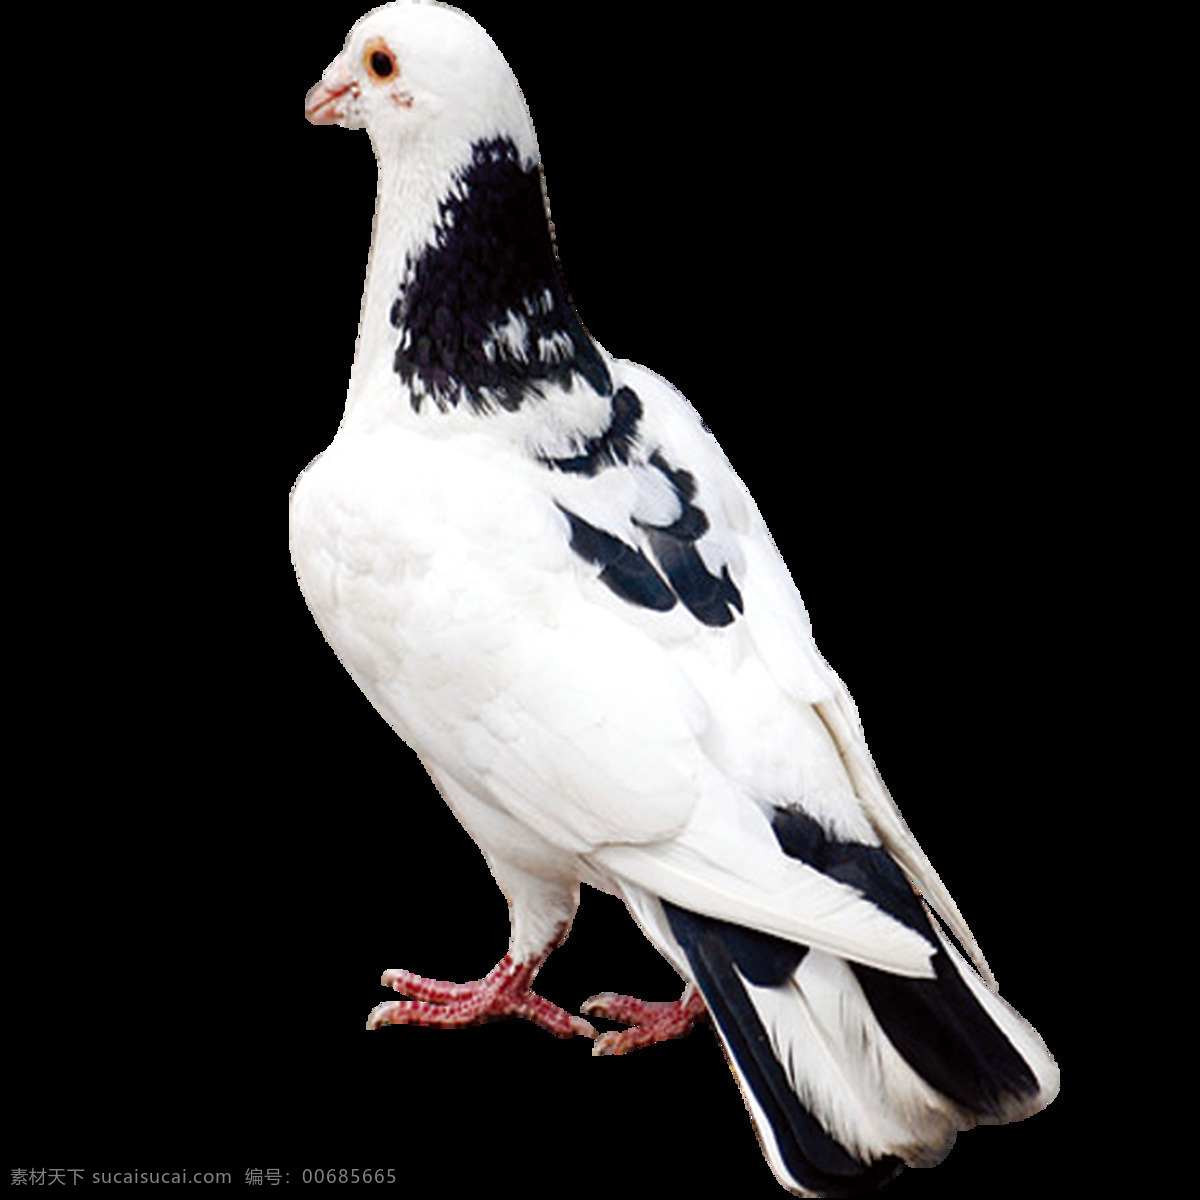 唯美 印象 鸟儿 绘画 白色鸽子 鲜明 生动 写实 真实